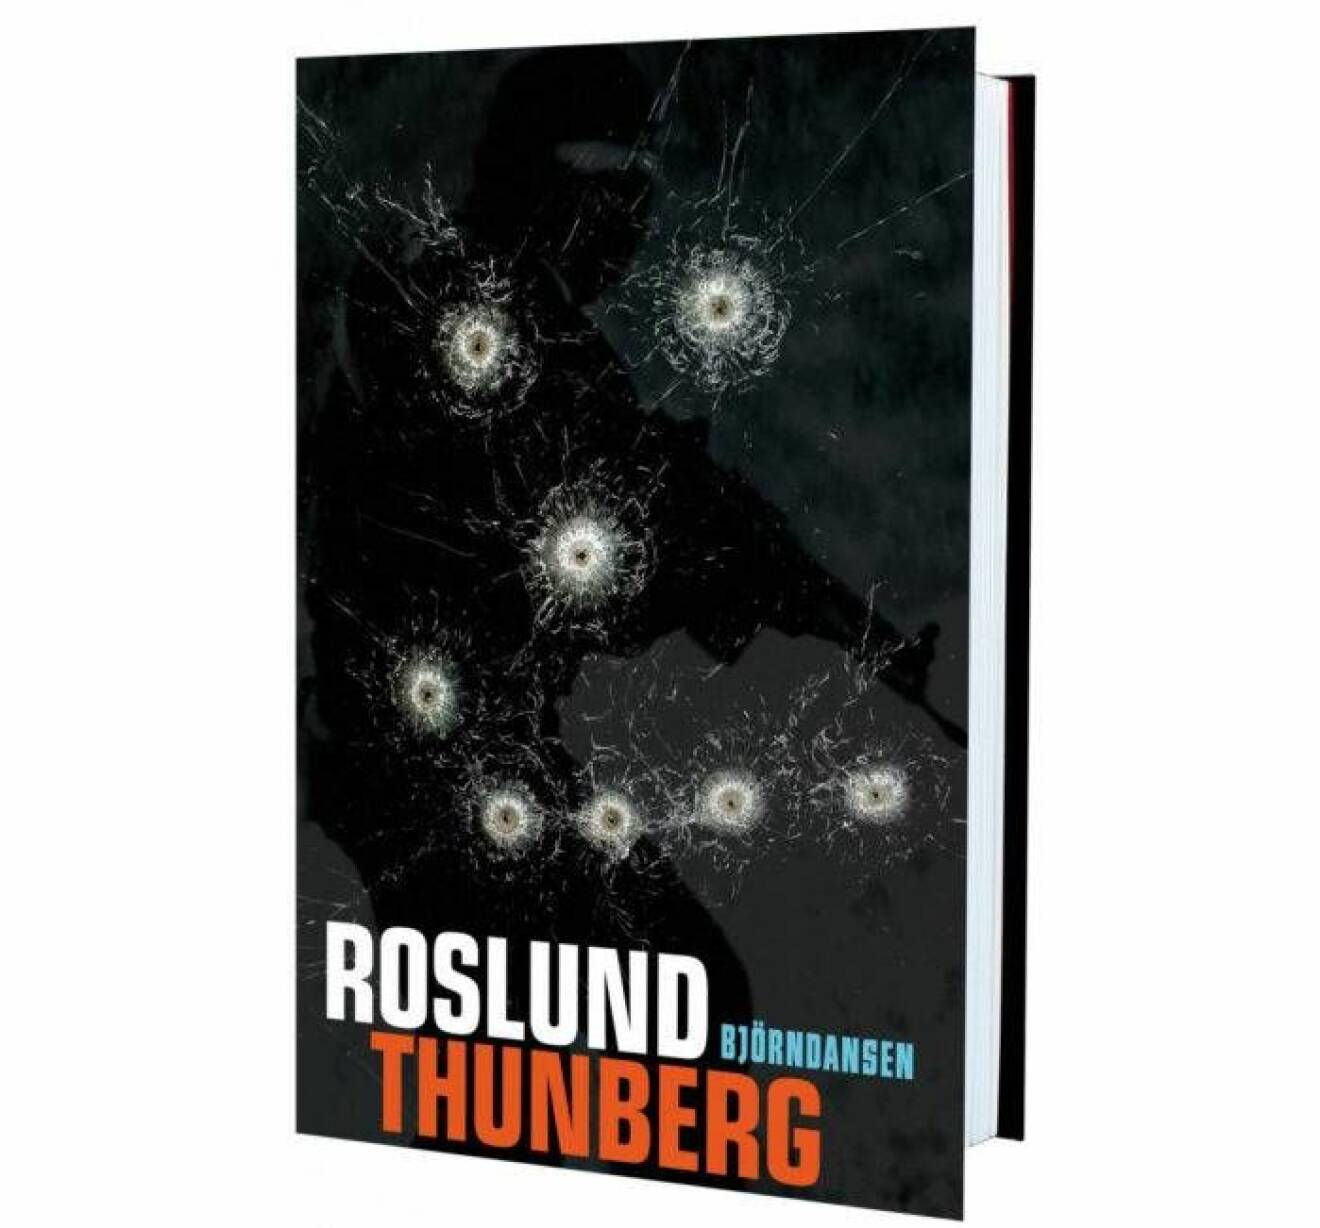 Roslund och Thunbergs bok Björndansen